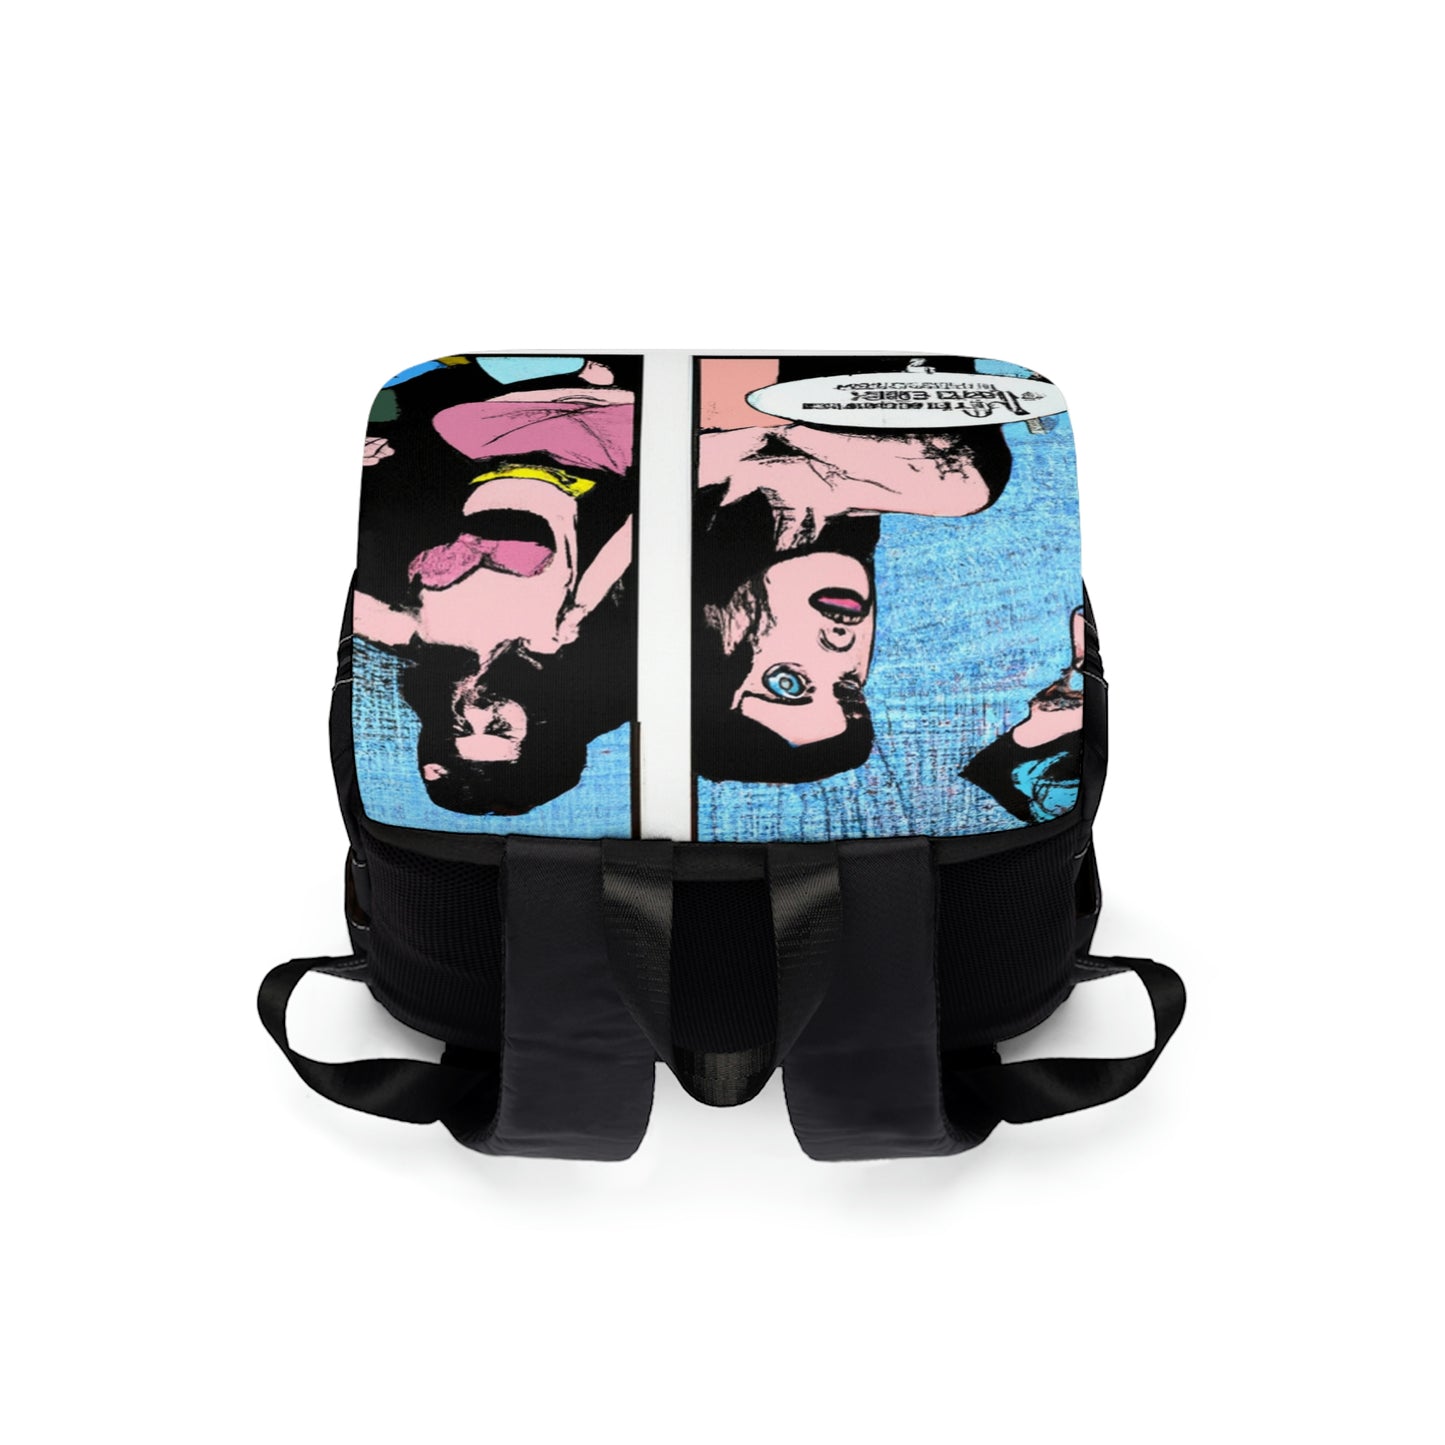 Vollmar - Comic Book Shoulder Travel Backpack Bag